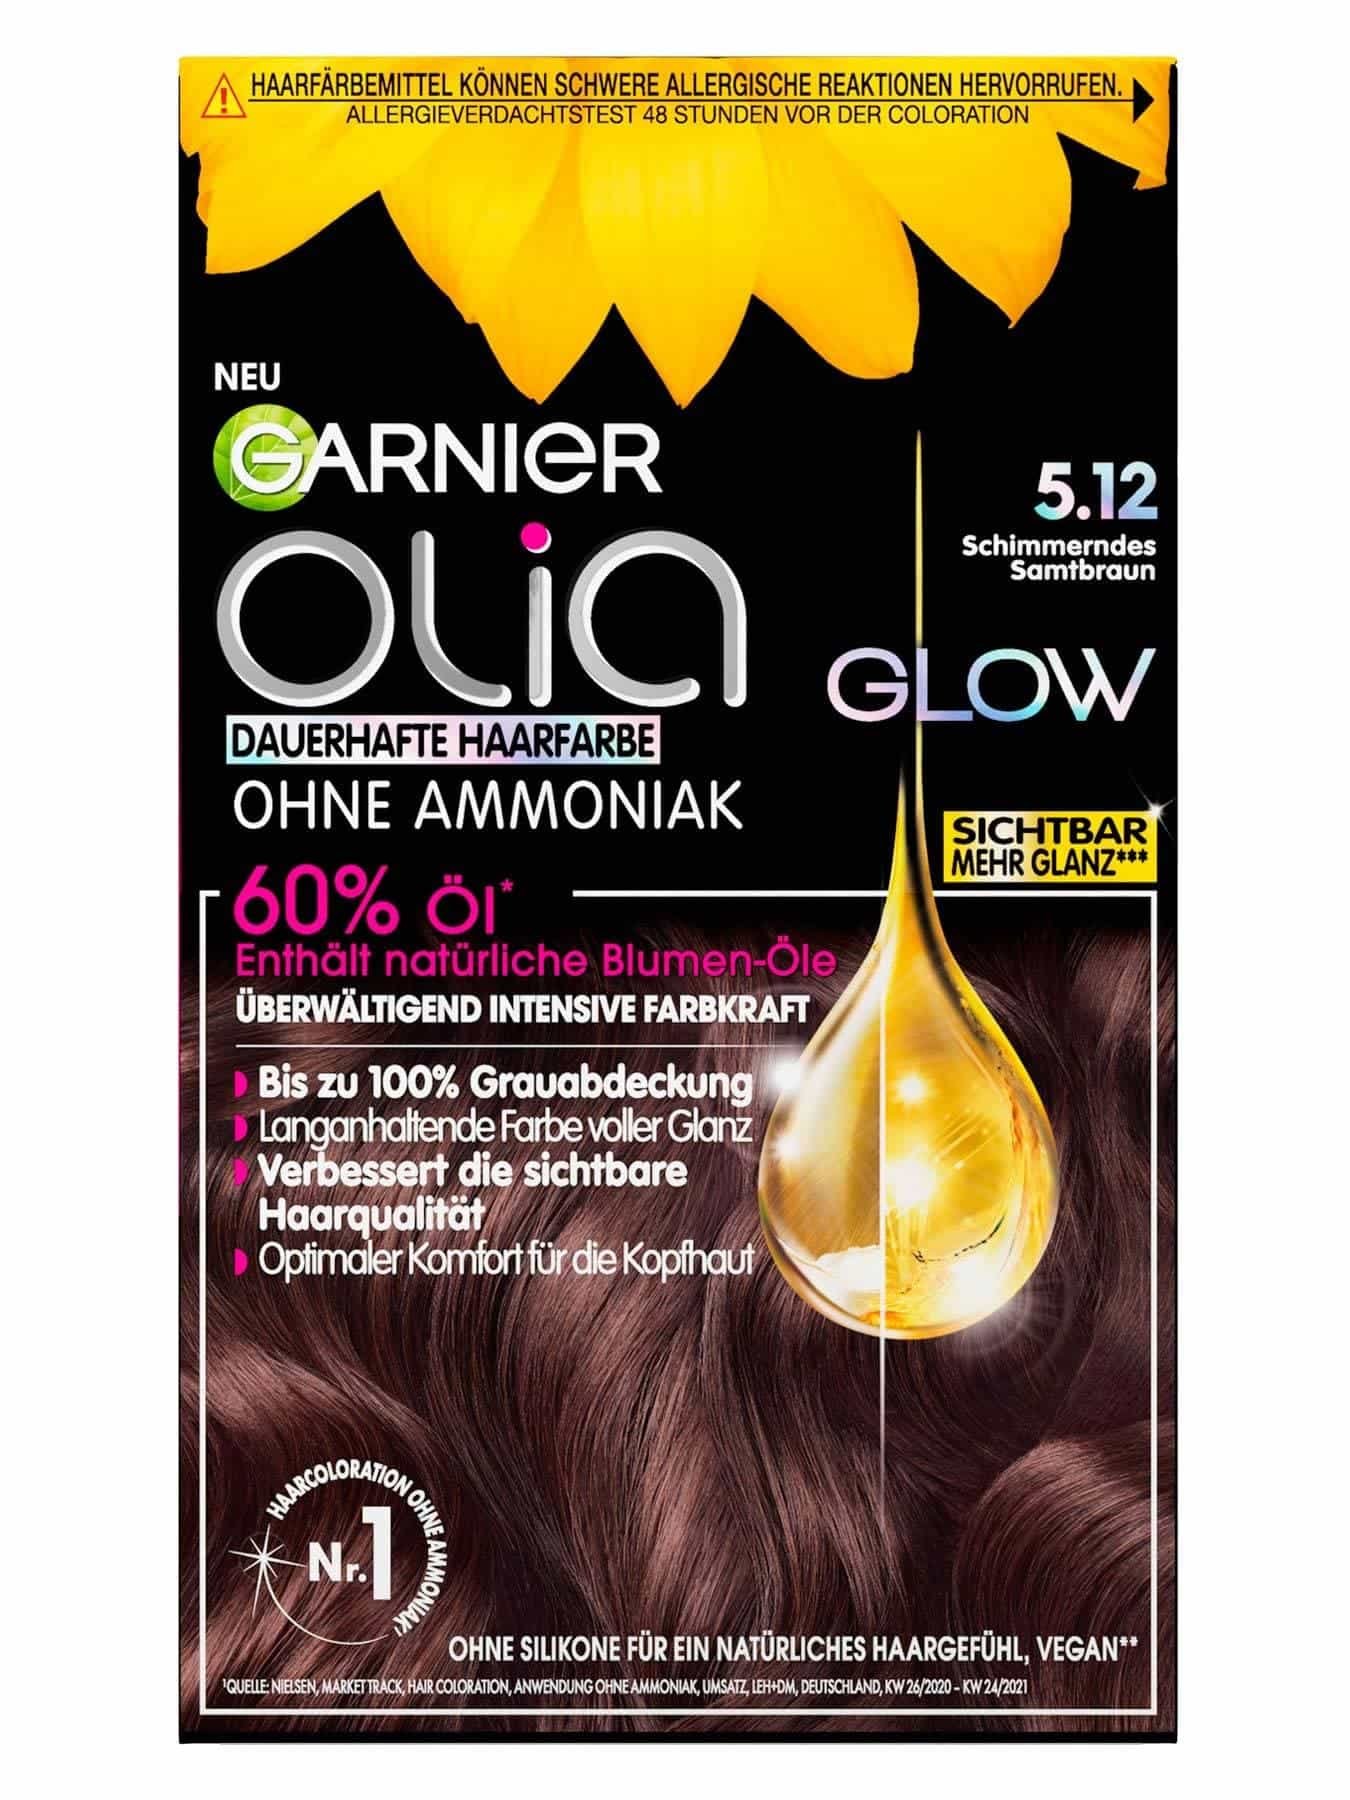 Haarfarben-Produkte Garnier Garnier Übersicht| in der Die